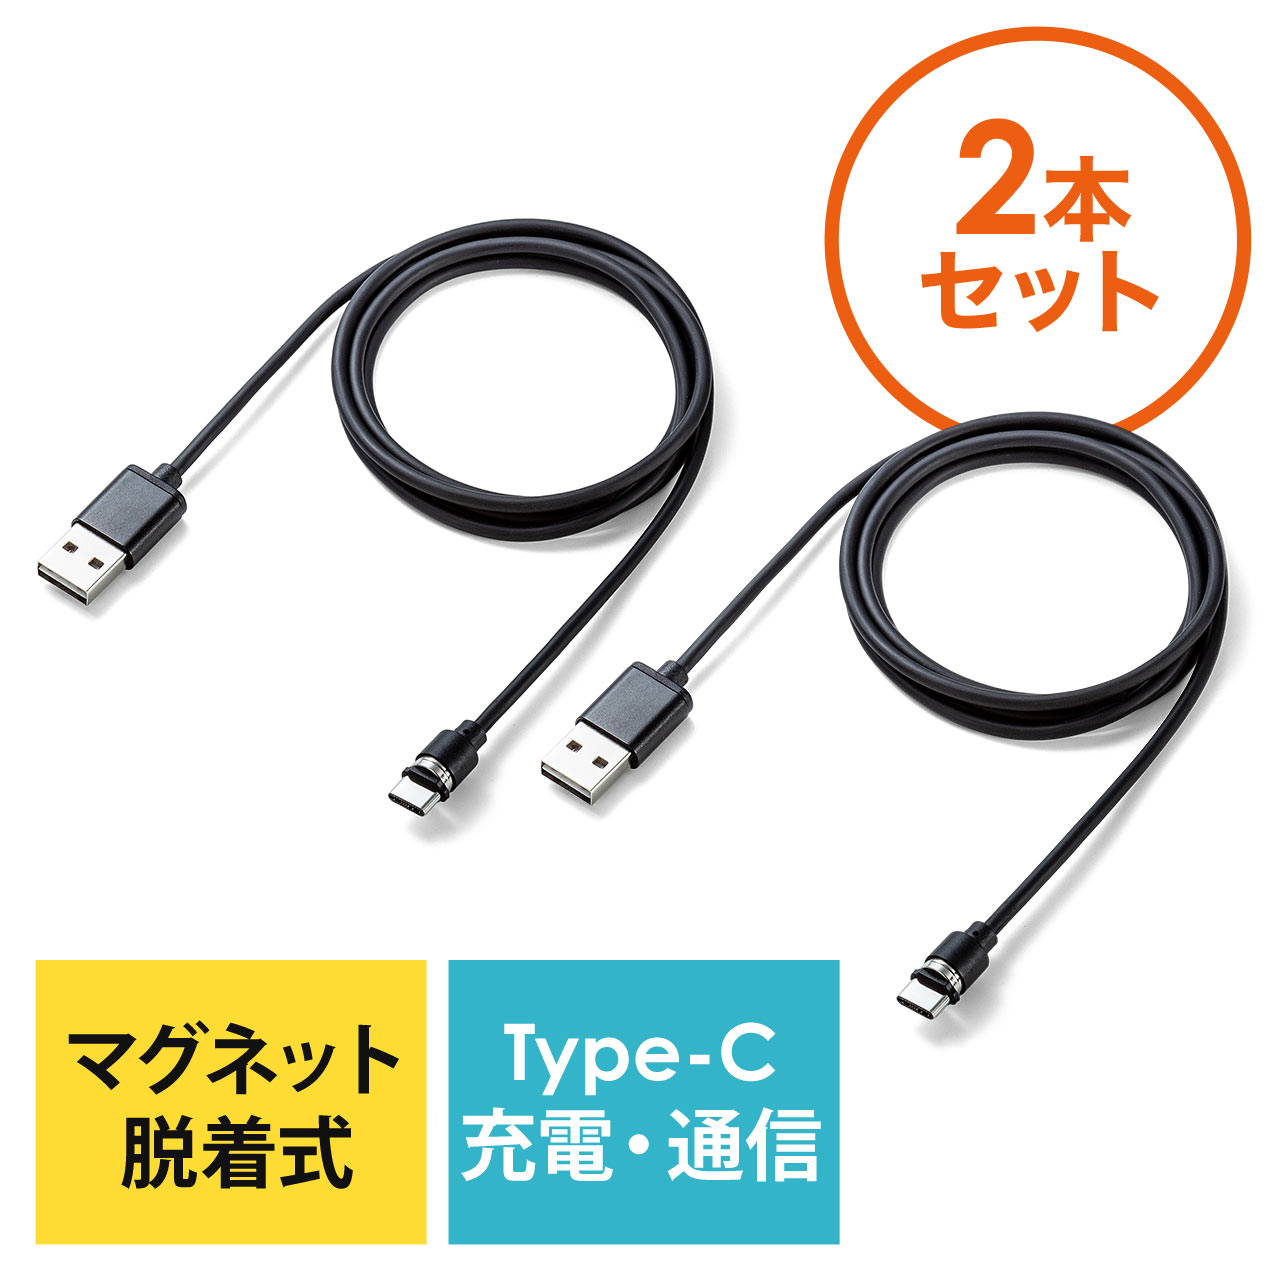 2本セット】コネクタ両面対応マグネット着脱式USB Type-C充電ケーブル（QuickCharge・スマートフォン・充電・通信・2A対応・ケーブル長1m・ブラック）  502-USB061-2の販売商品 通販ならサンワダイレクト